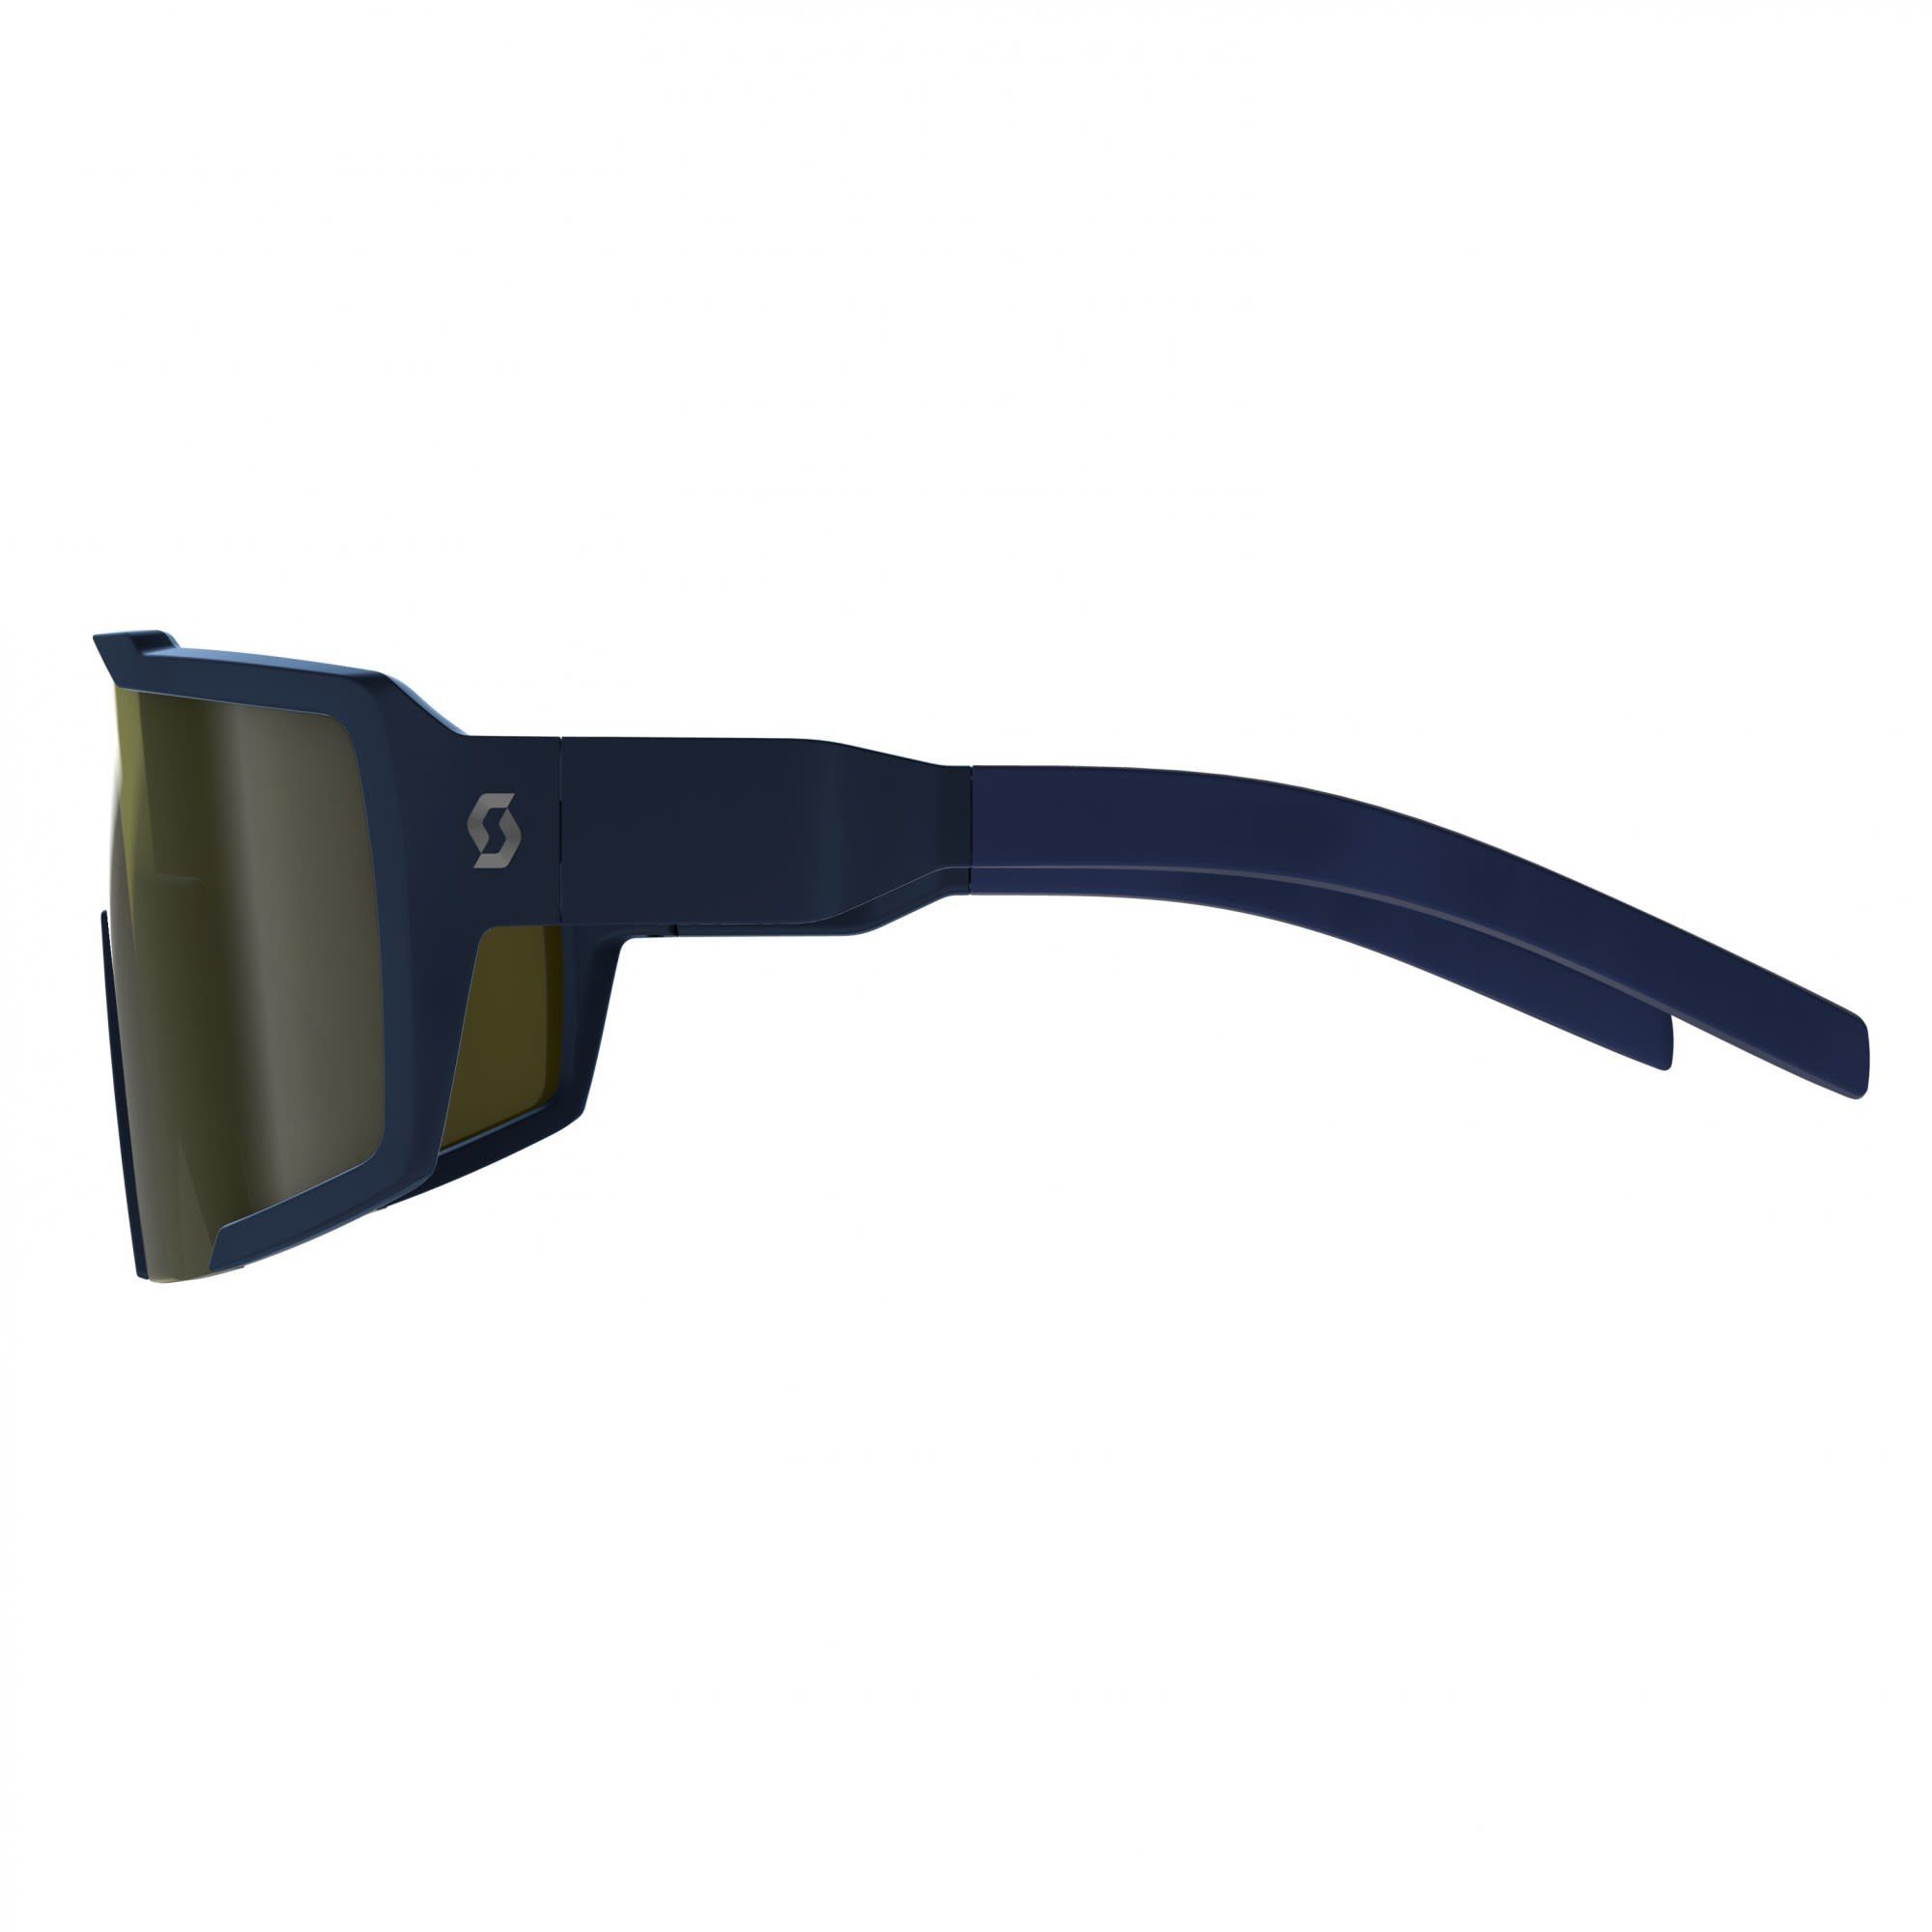 Gold Chrome Submariner Fahrradbrille Scott Accessoires Scott - Blue Shield Sunglasses